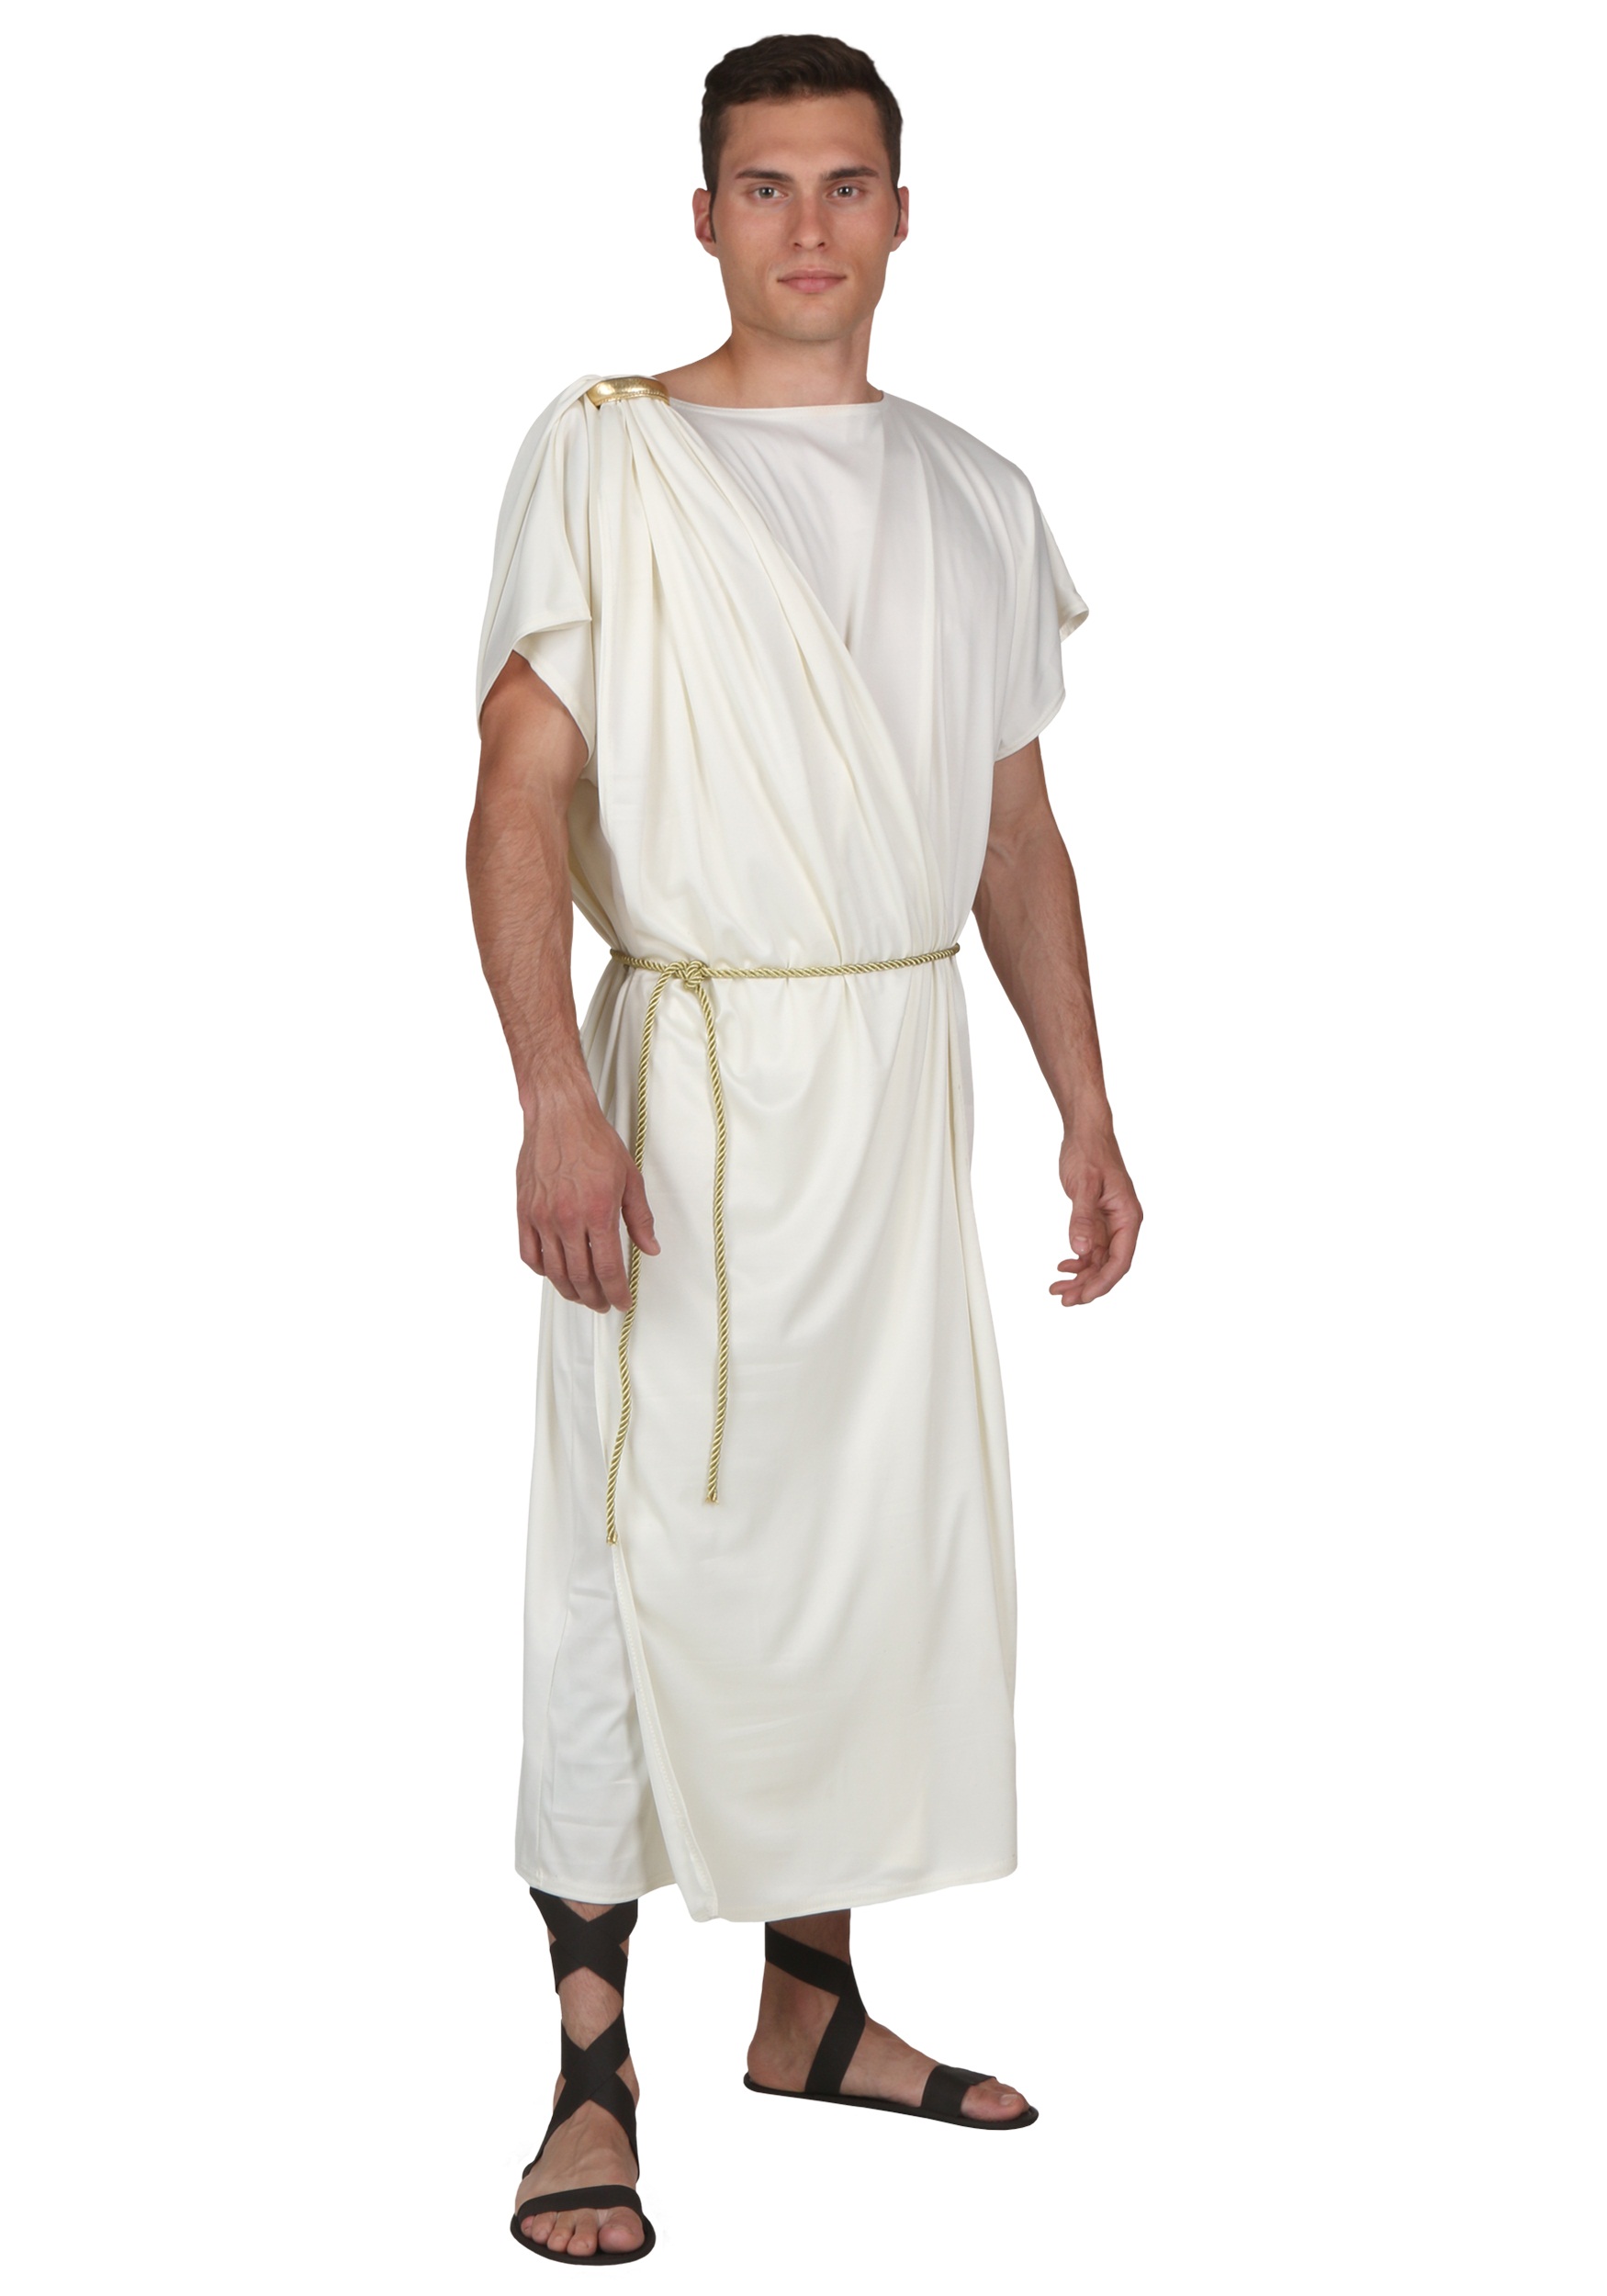 Plus Size Roman Toga Mens Costume